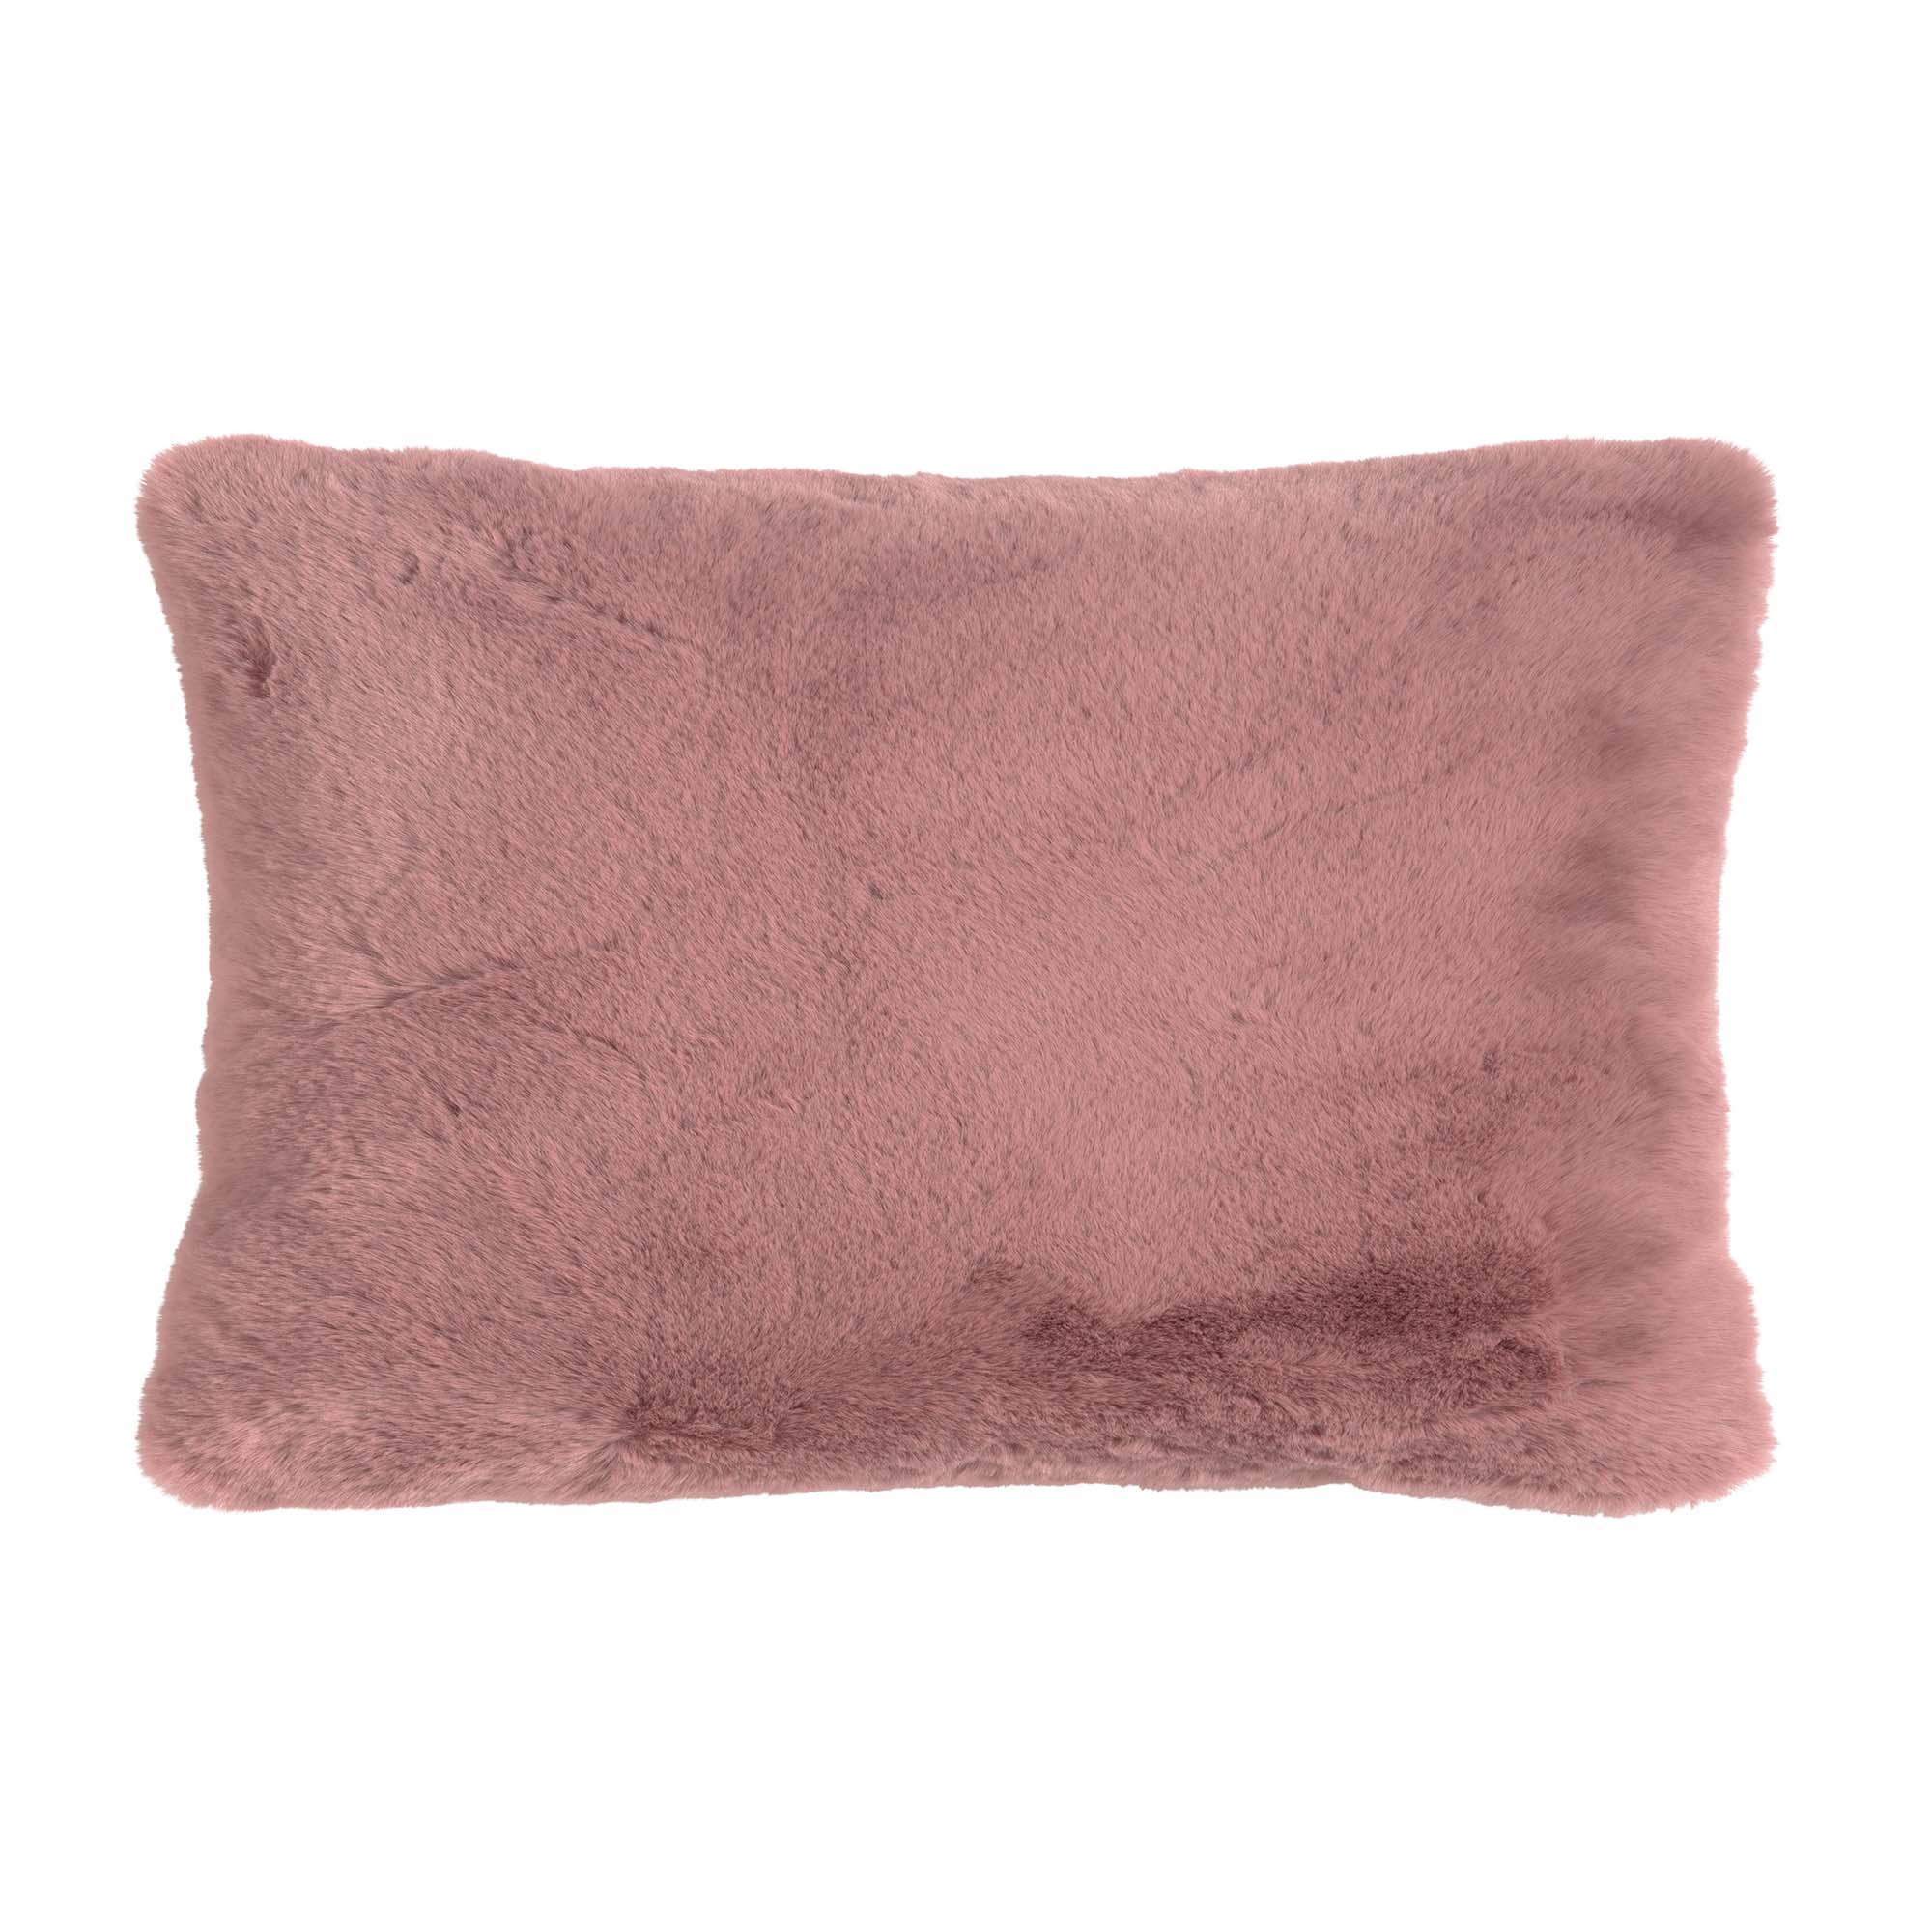 ZAYA - Kussenhoes unikleur 30x50 cm -  Pale Mauve - roze